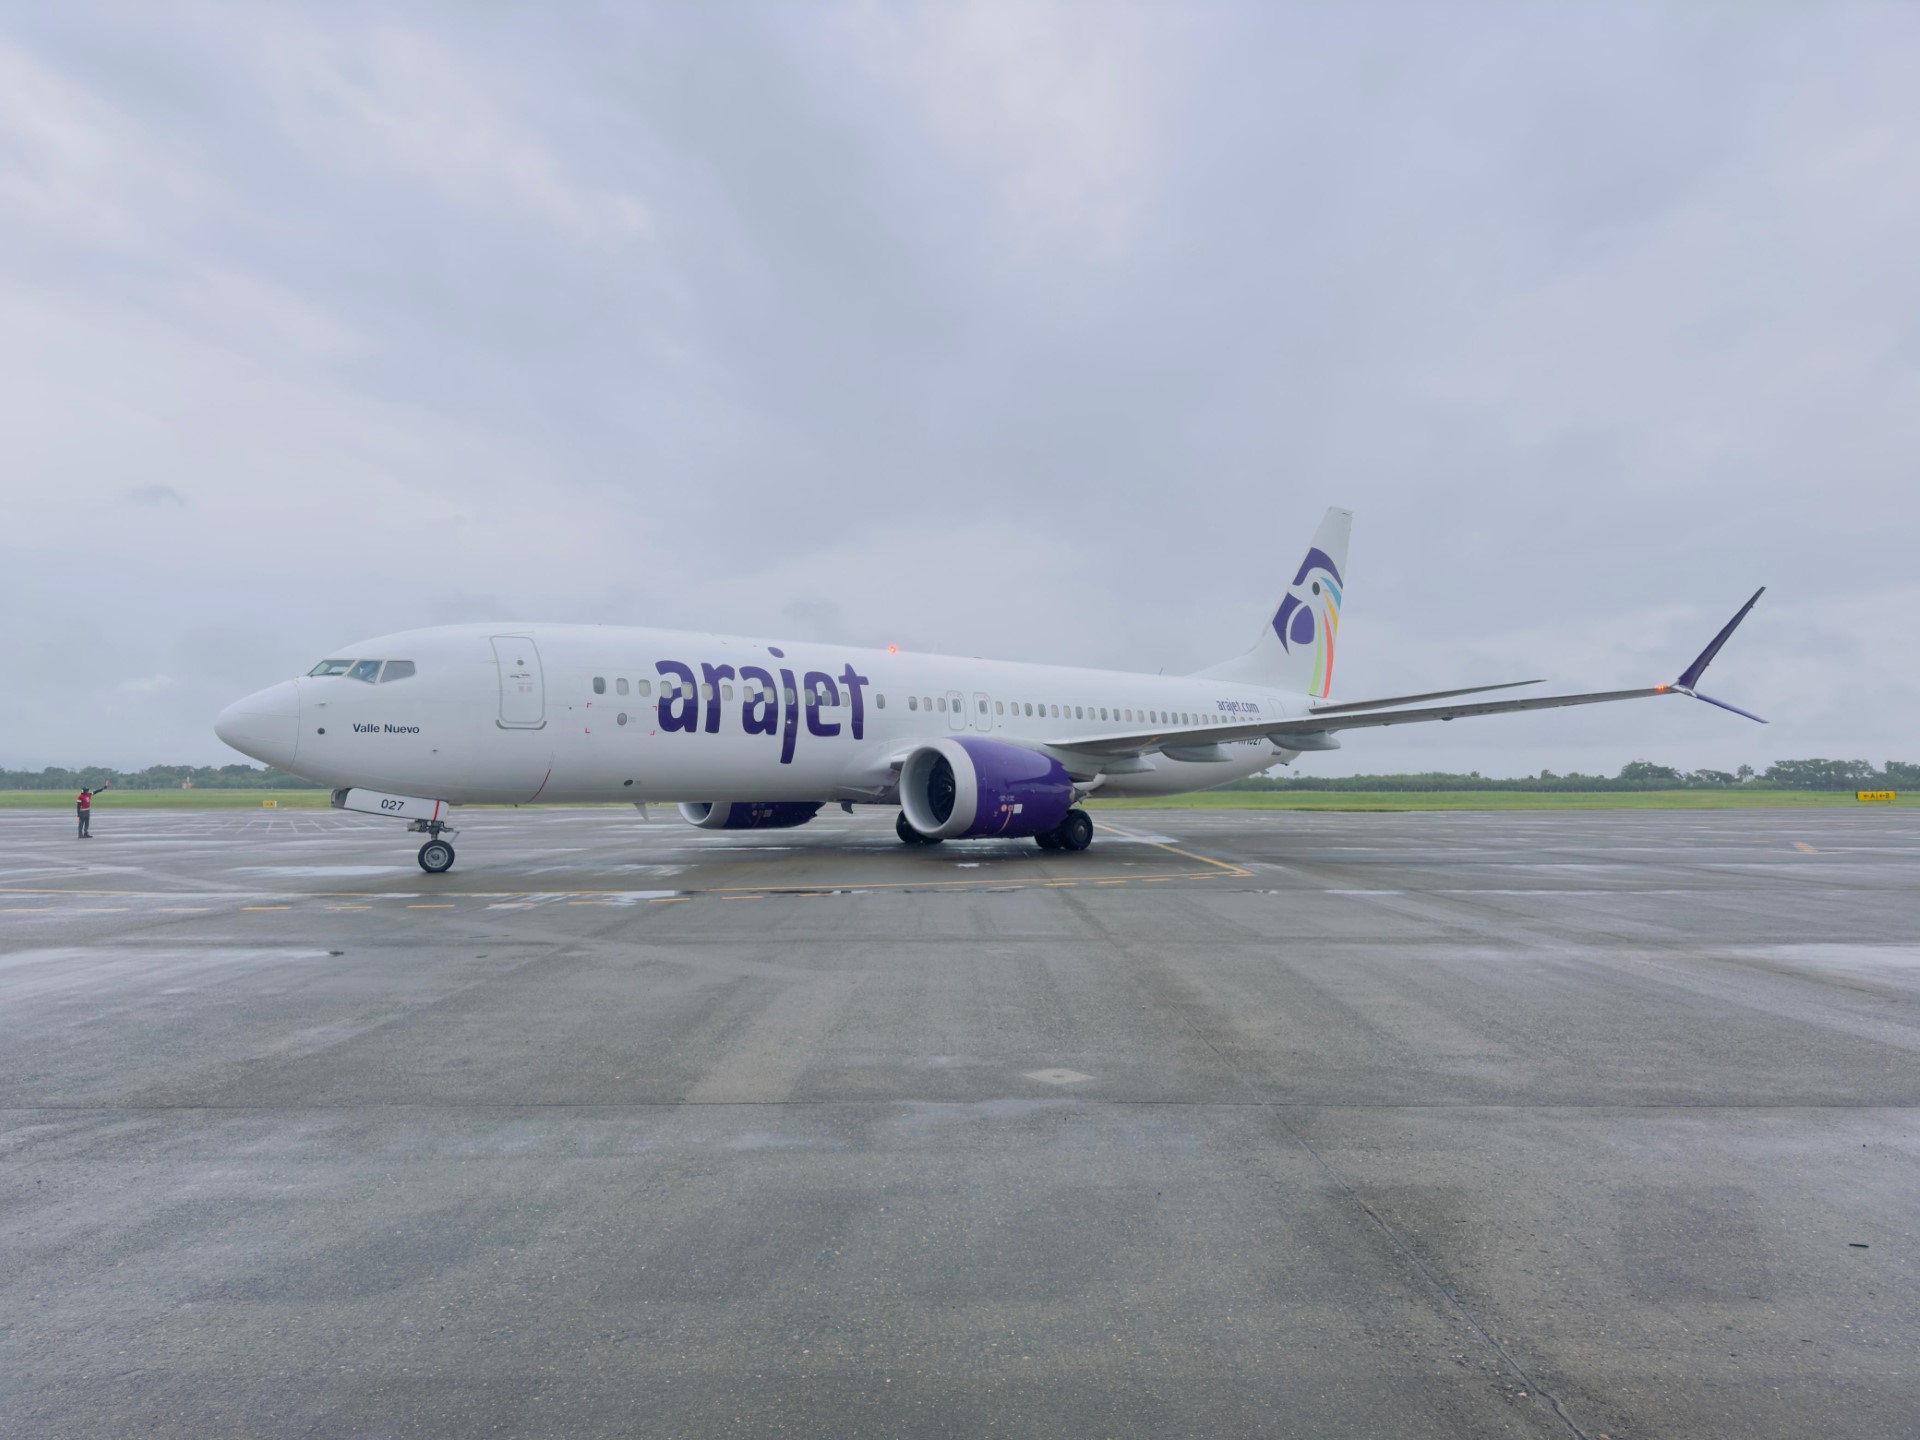 Arajet anuncia aumento de frecuencia a sus destinos impulsando su calendario de vuelos para invierno